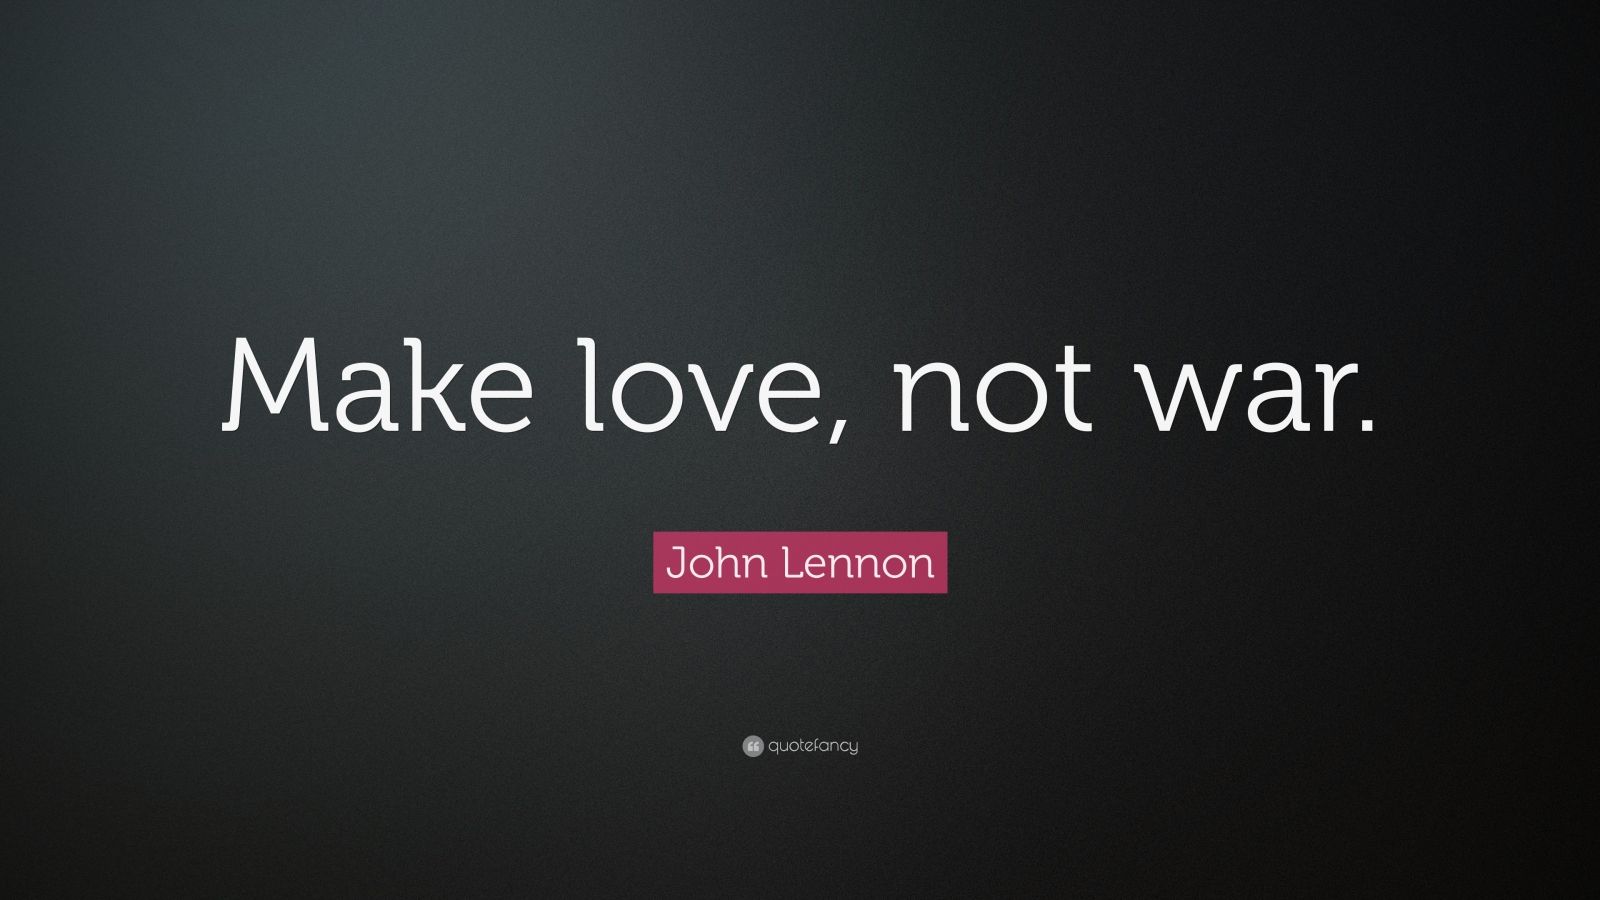 John Lennon Quote “Make love not war ”